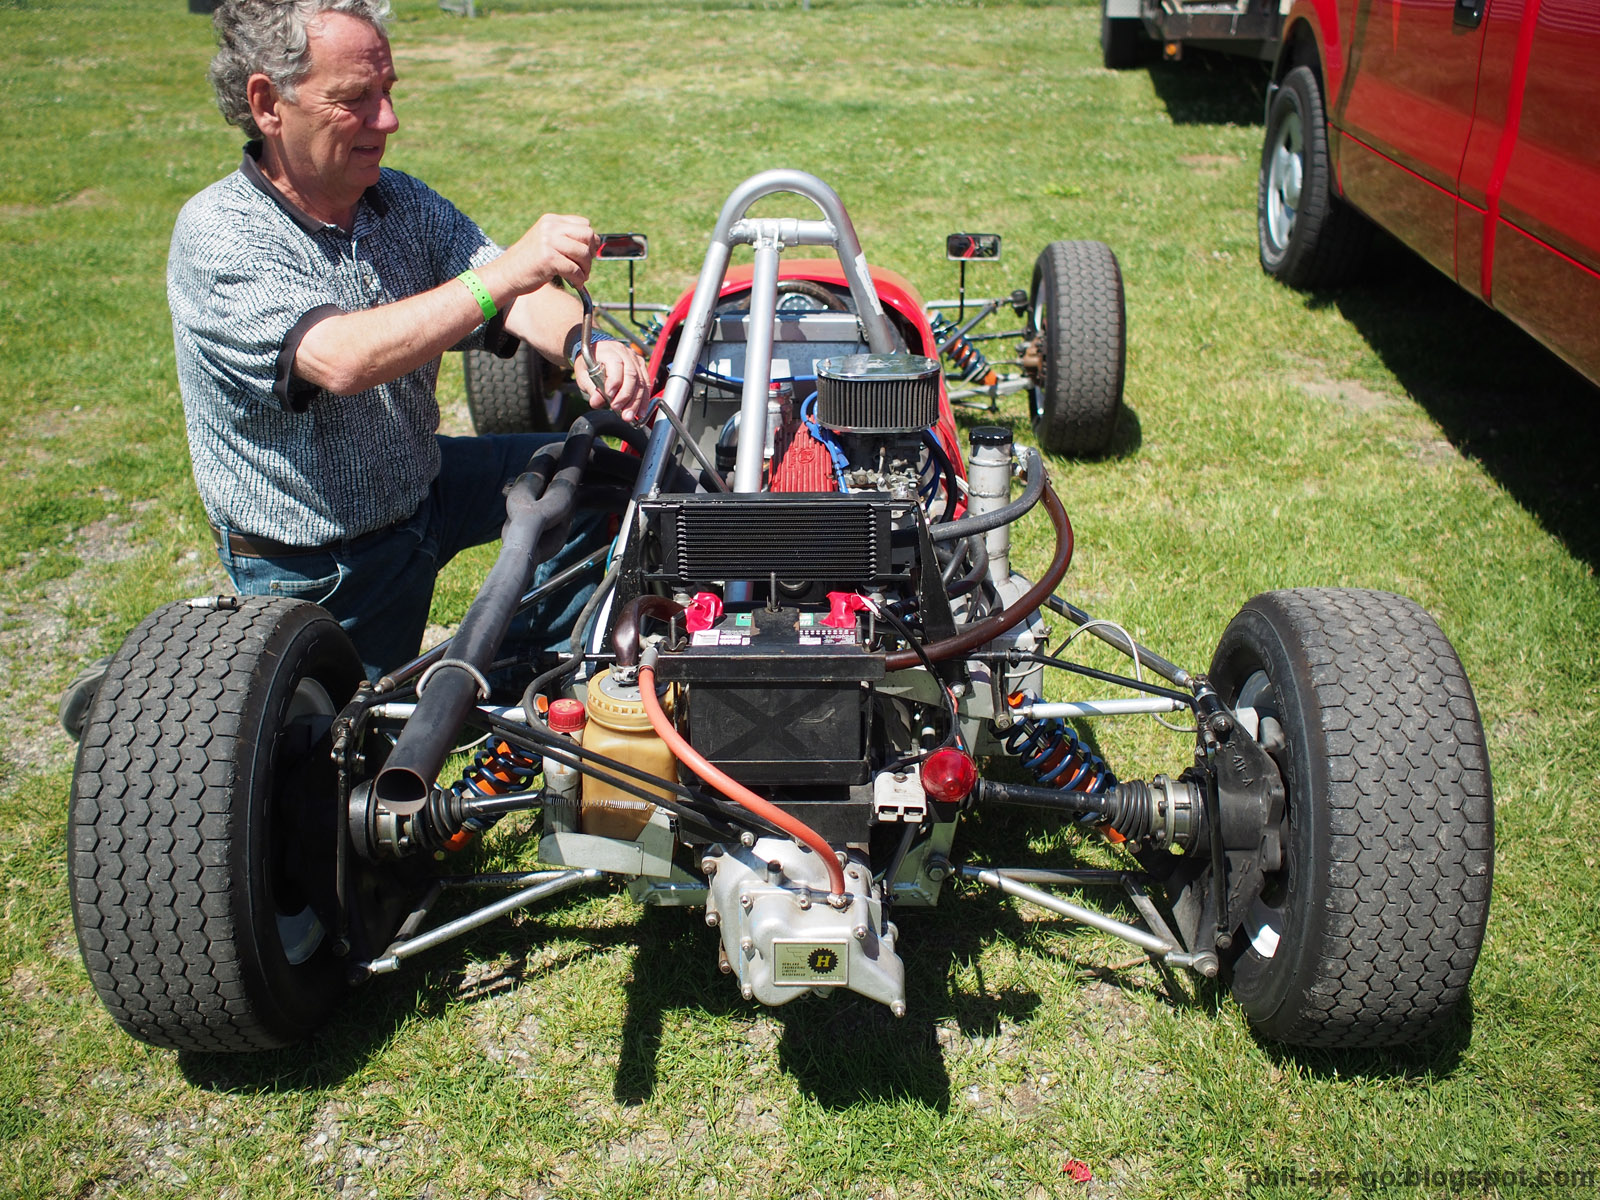 Blackhawk Vintage Classic 2014 Group 4 - Monopostos, Formula V, Formula For...